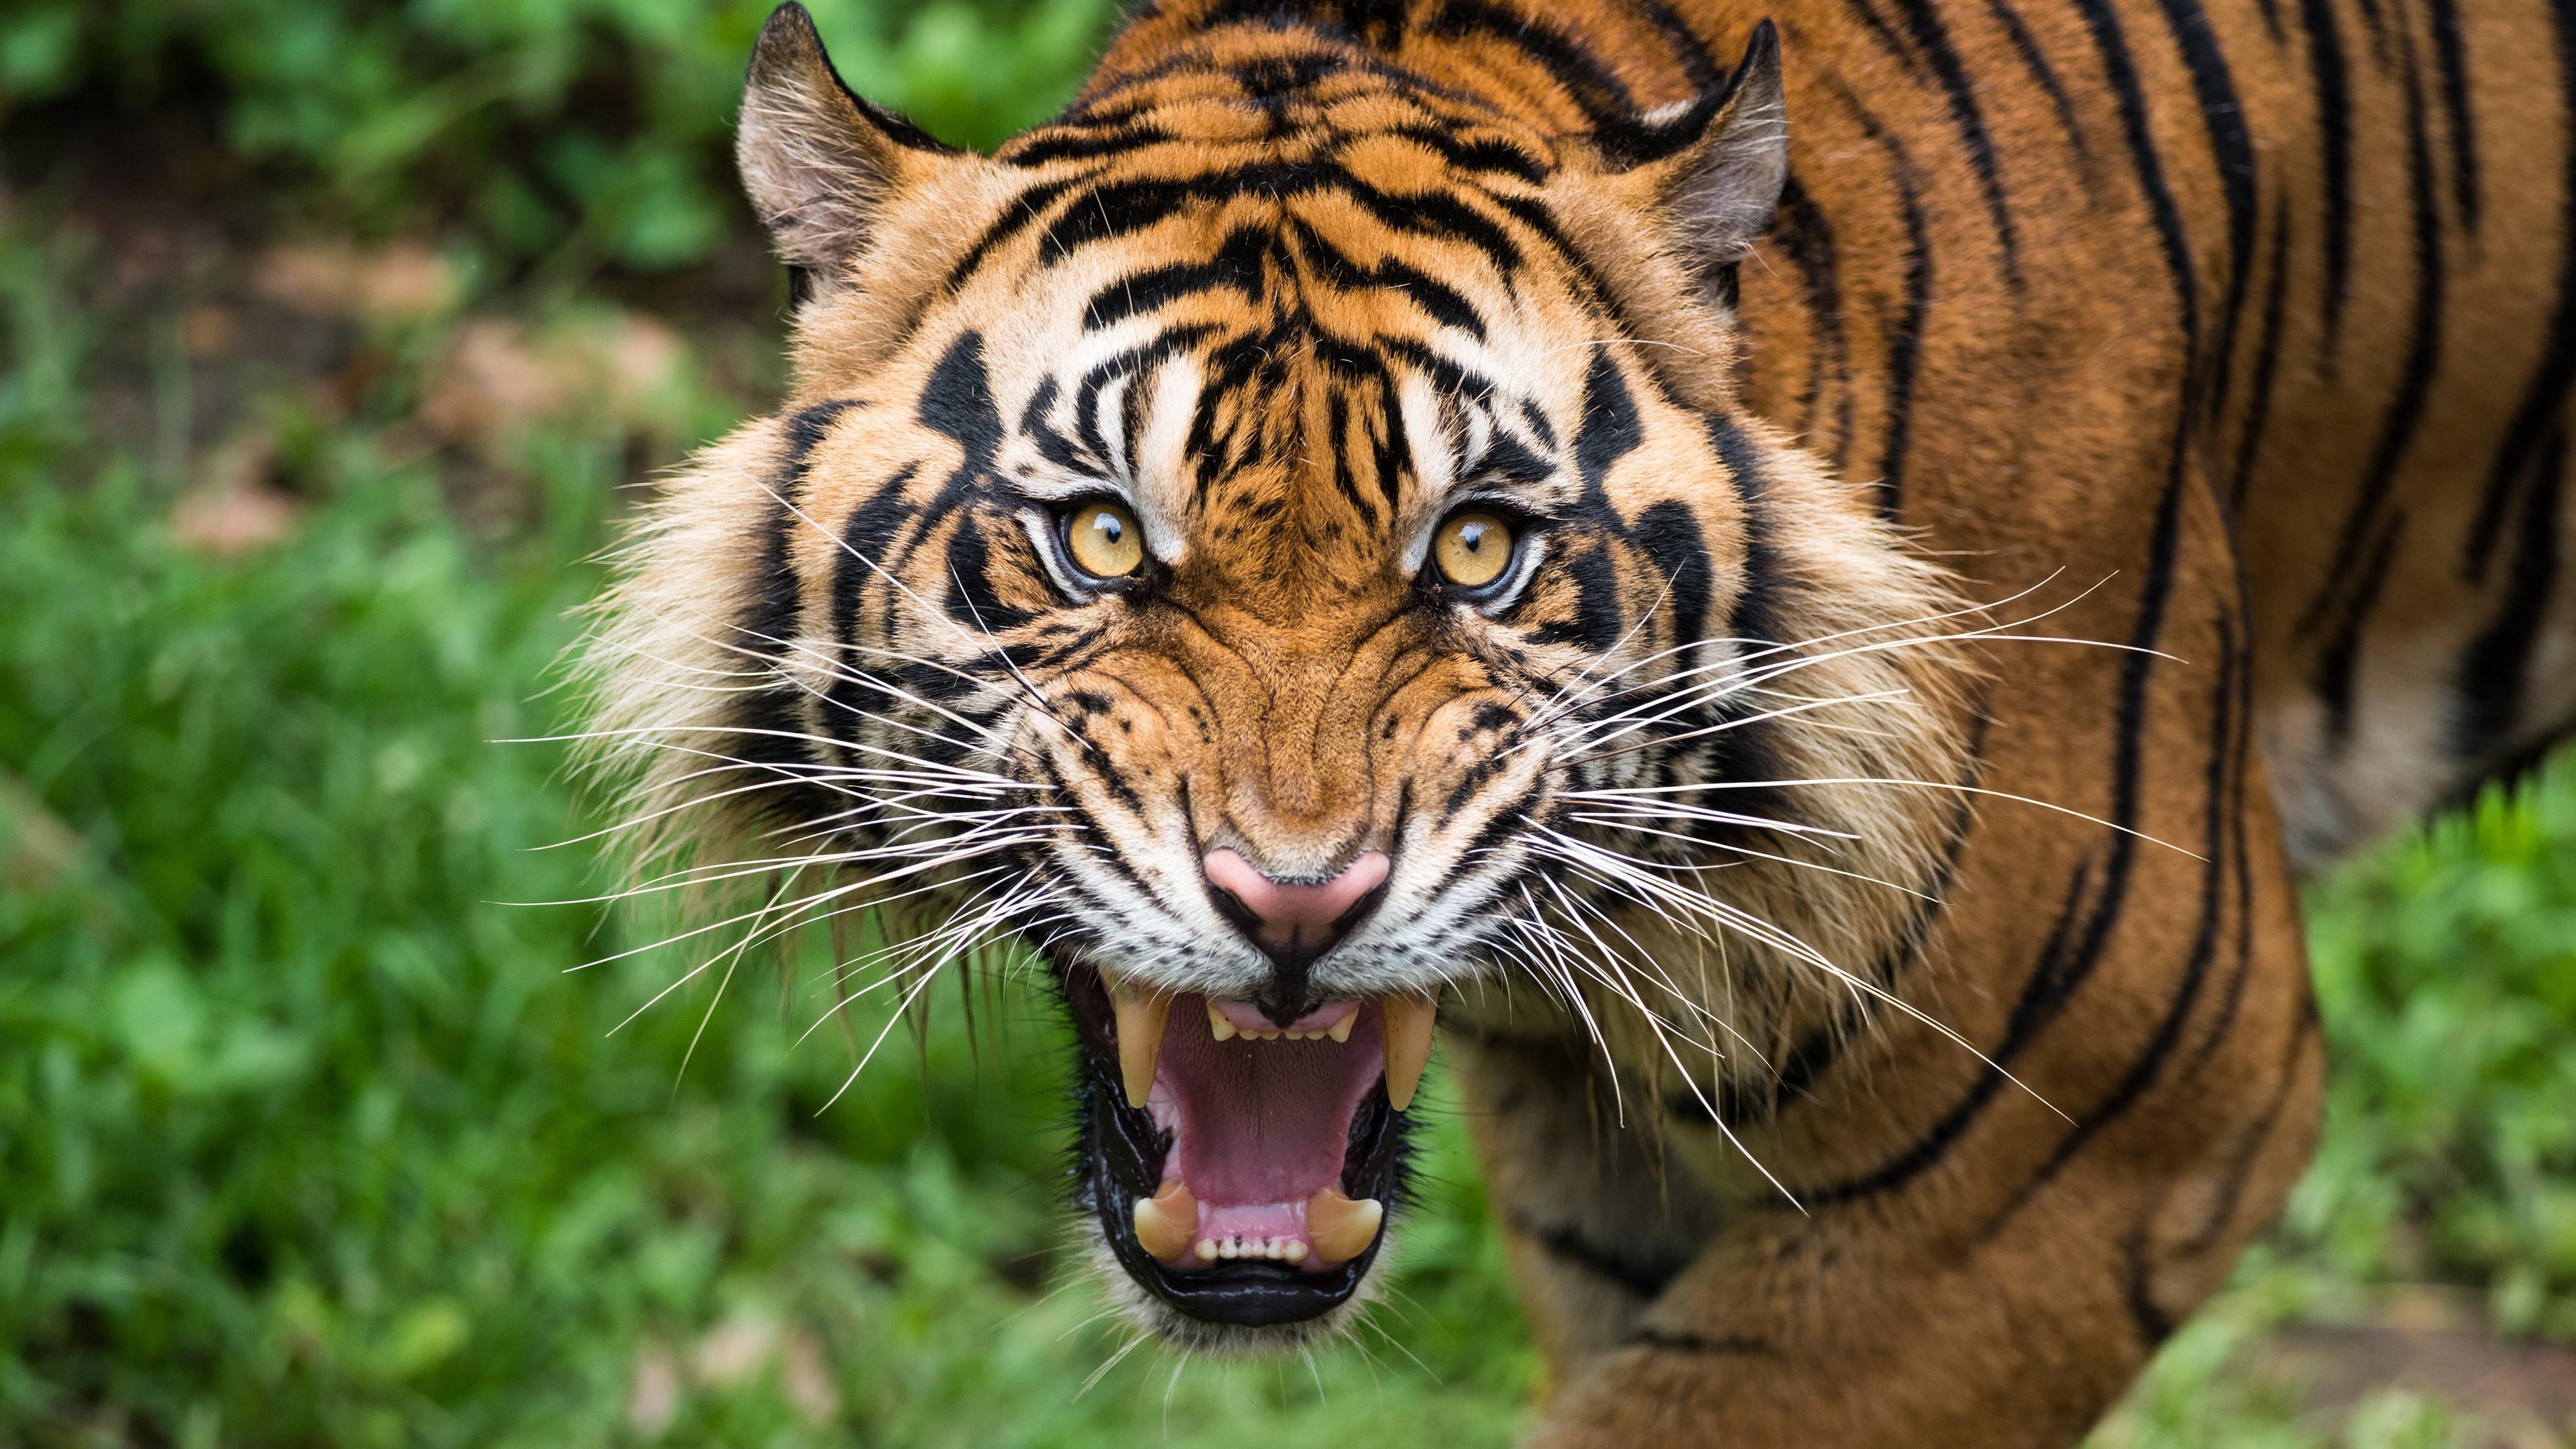 老虎的吼叫,能麻痹动物,它会在捕猎过程中当定身术用吗?